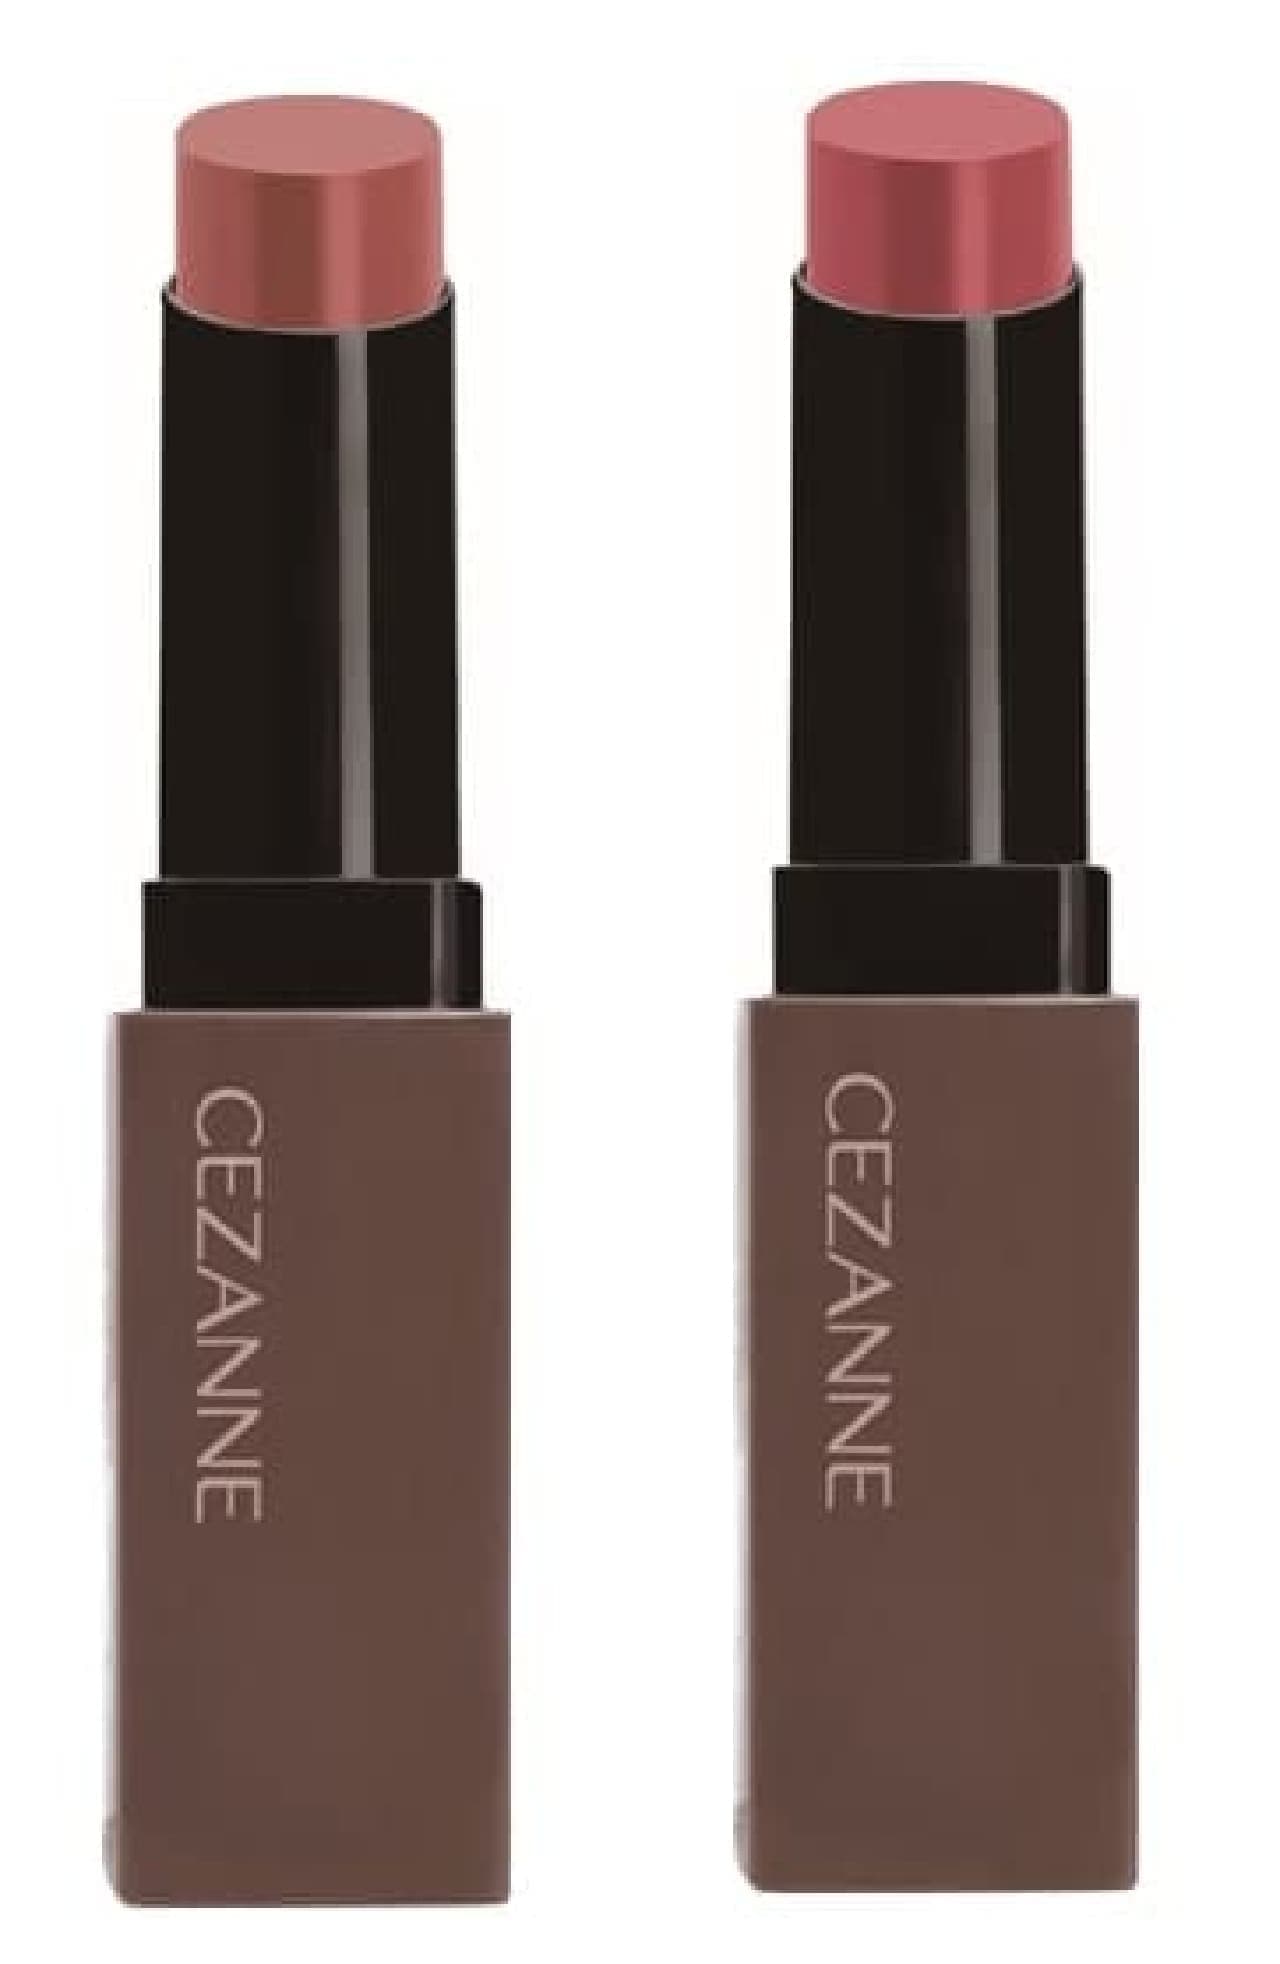 Sezanne Lip Color Shield 2 new colors